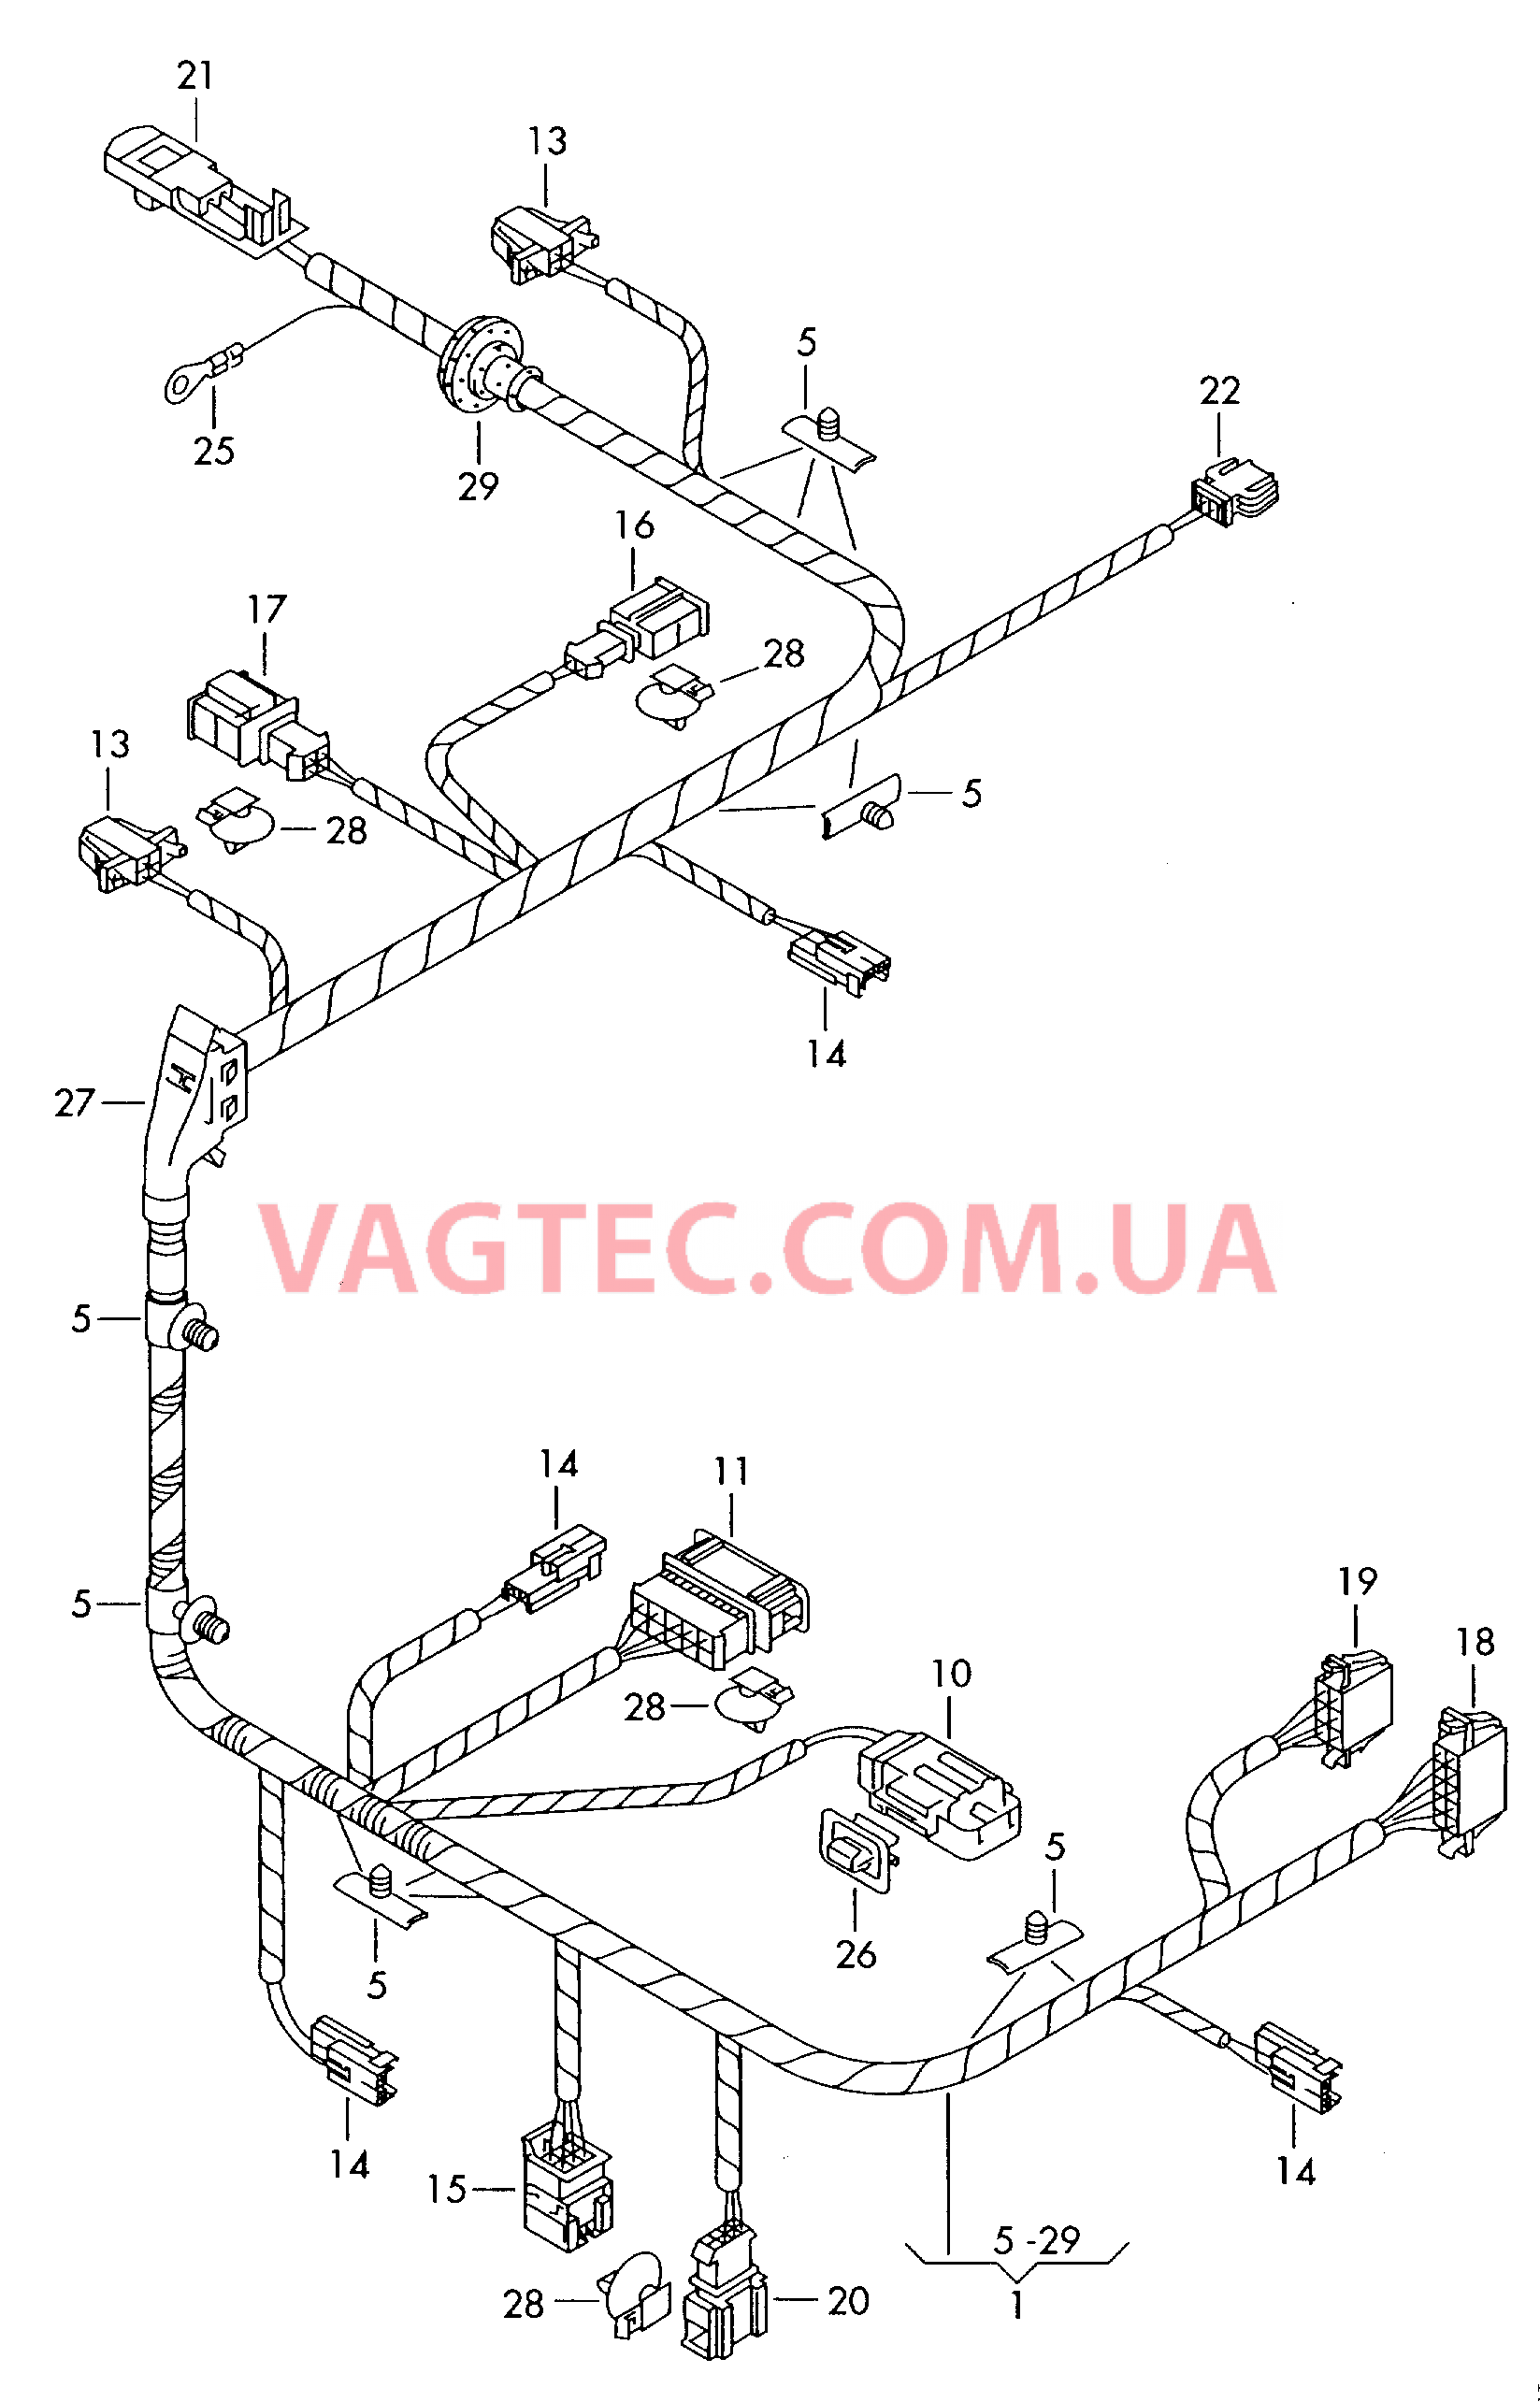 Жгут проводов сиденьяс электрорегулировкой  для а/м с 12-позиционной электрической регулировкой сидений  для VOLKSWAGEN Phaeton 2002